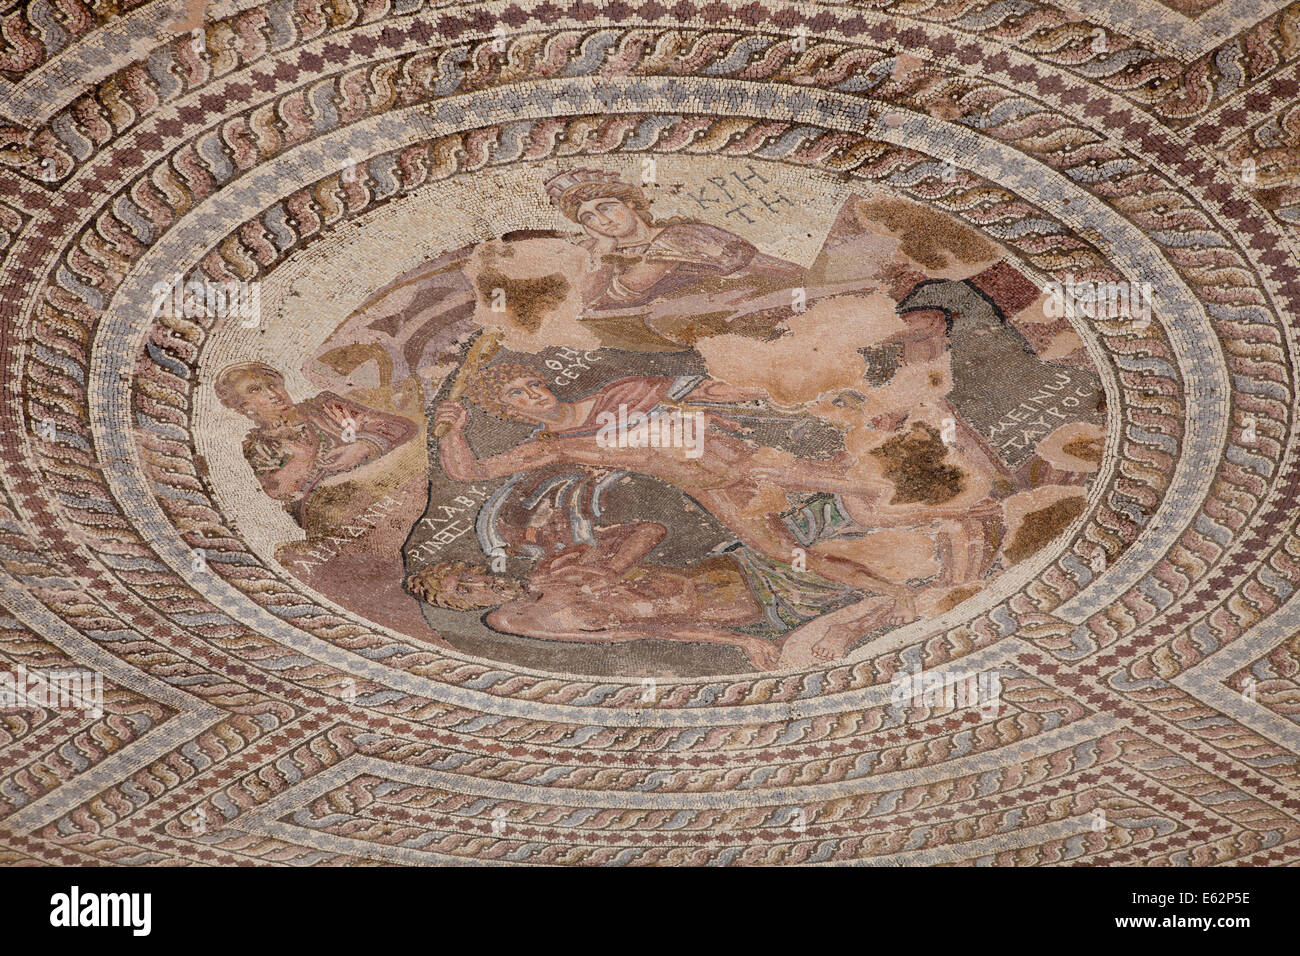 Mosaïque circulaire de Thesus tuant le Minotaure, entouré par le célèbre labyrinthe à l'archéologique de Paphos, Chypre Banque D'Images